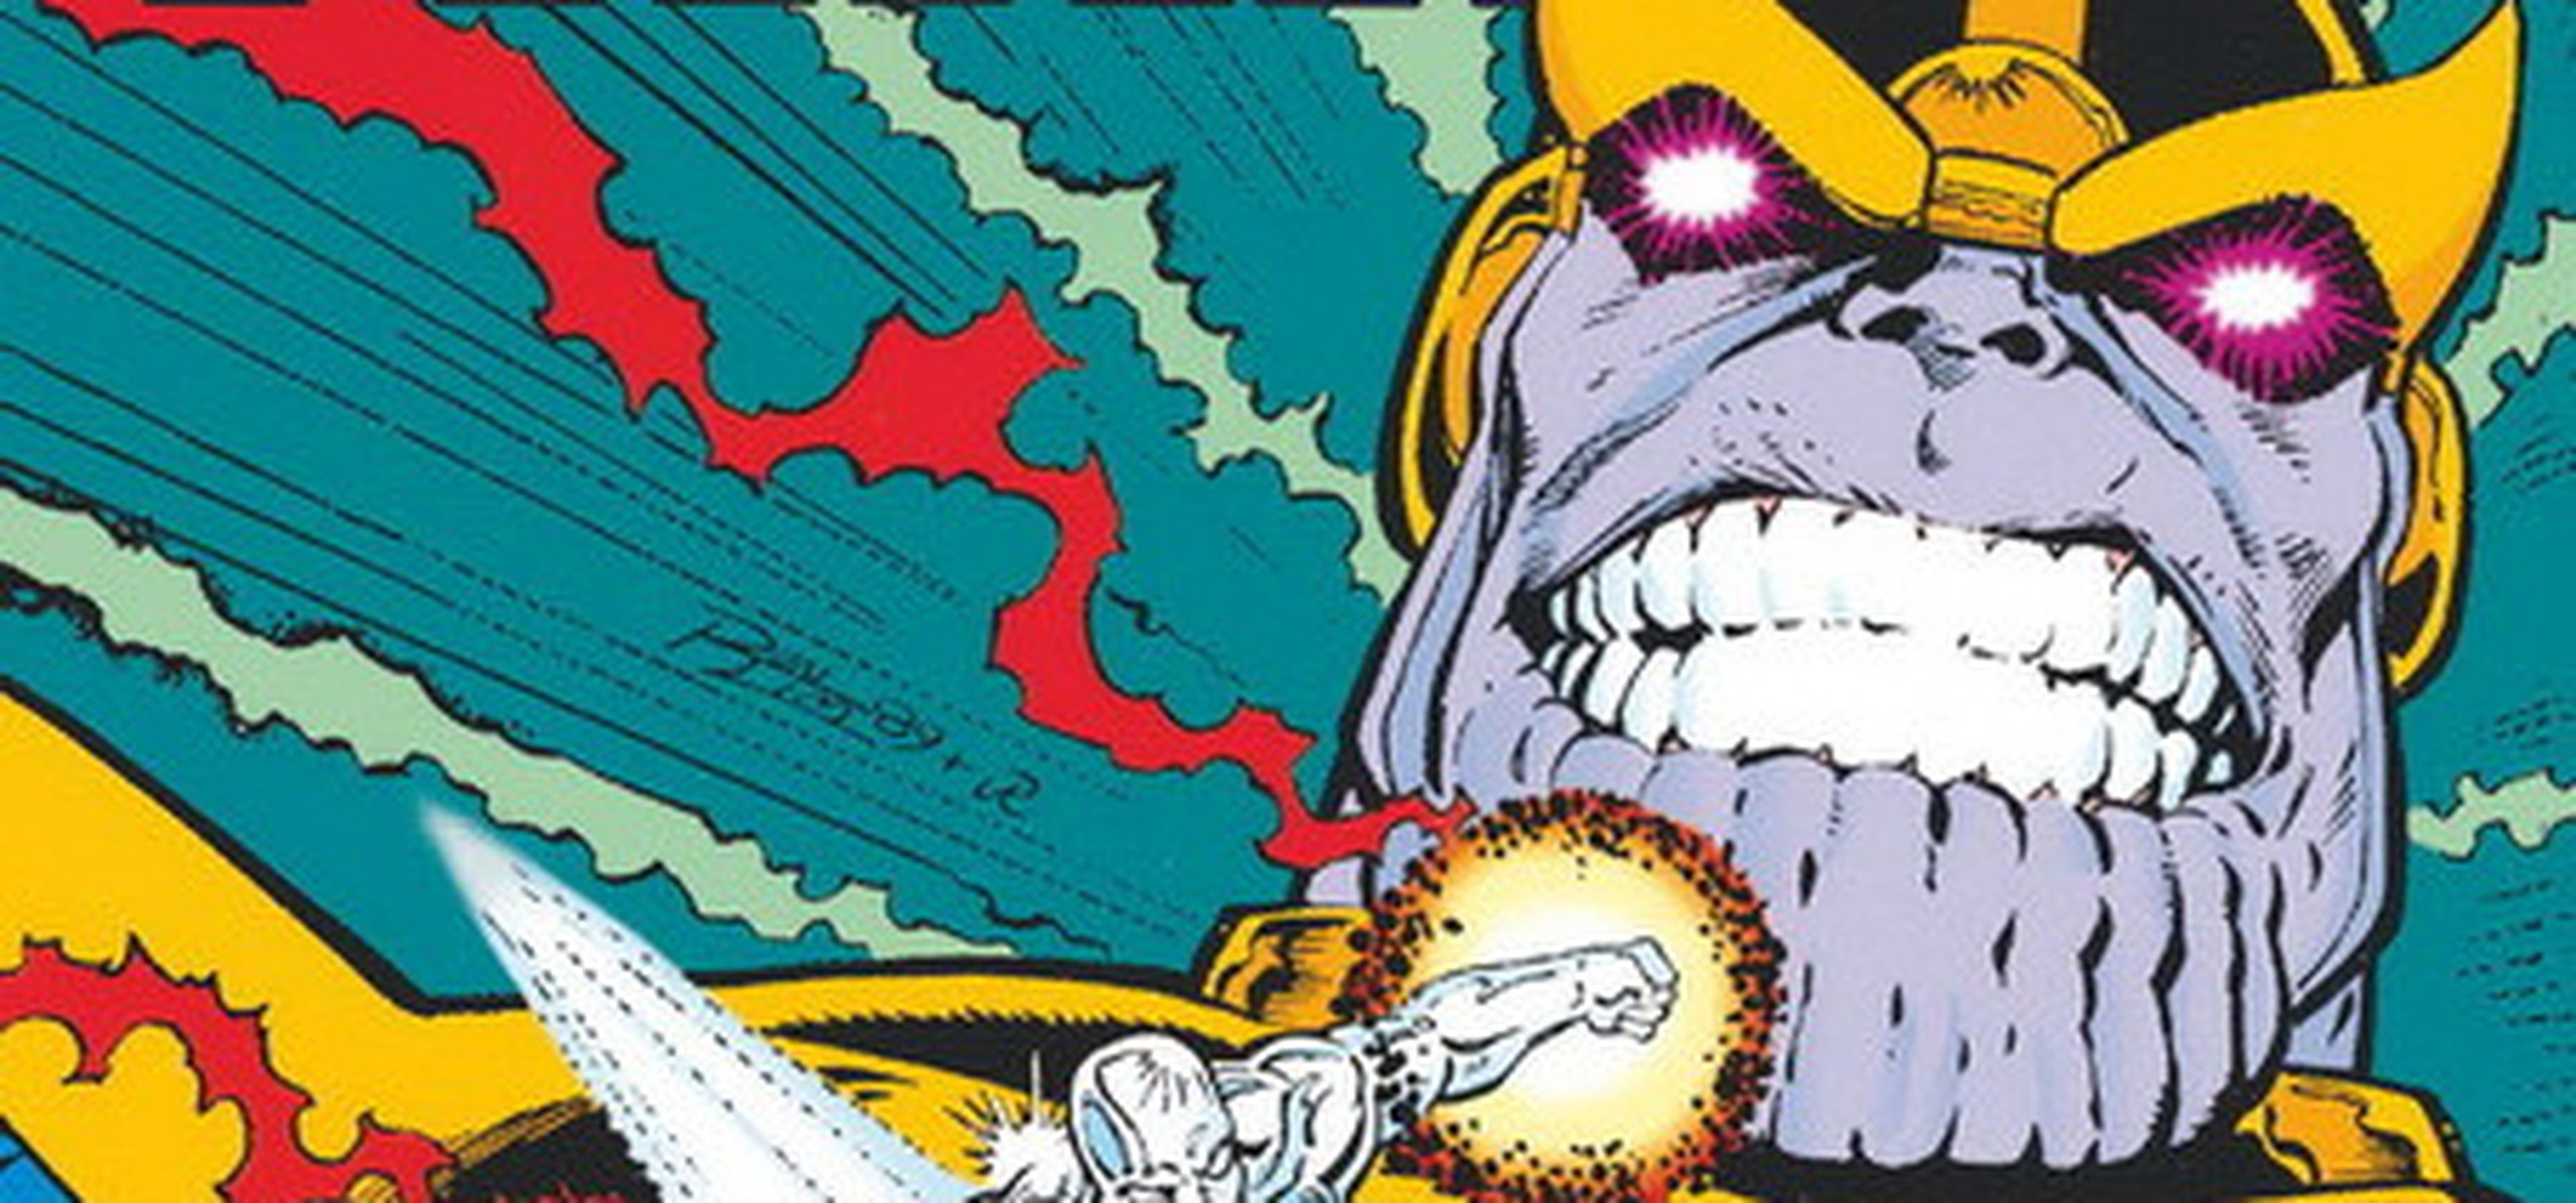 El Renacimiento de Thanos, de Jim Starlin y Rom Lim